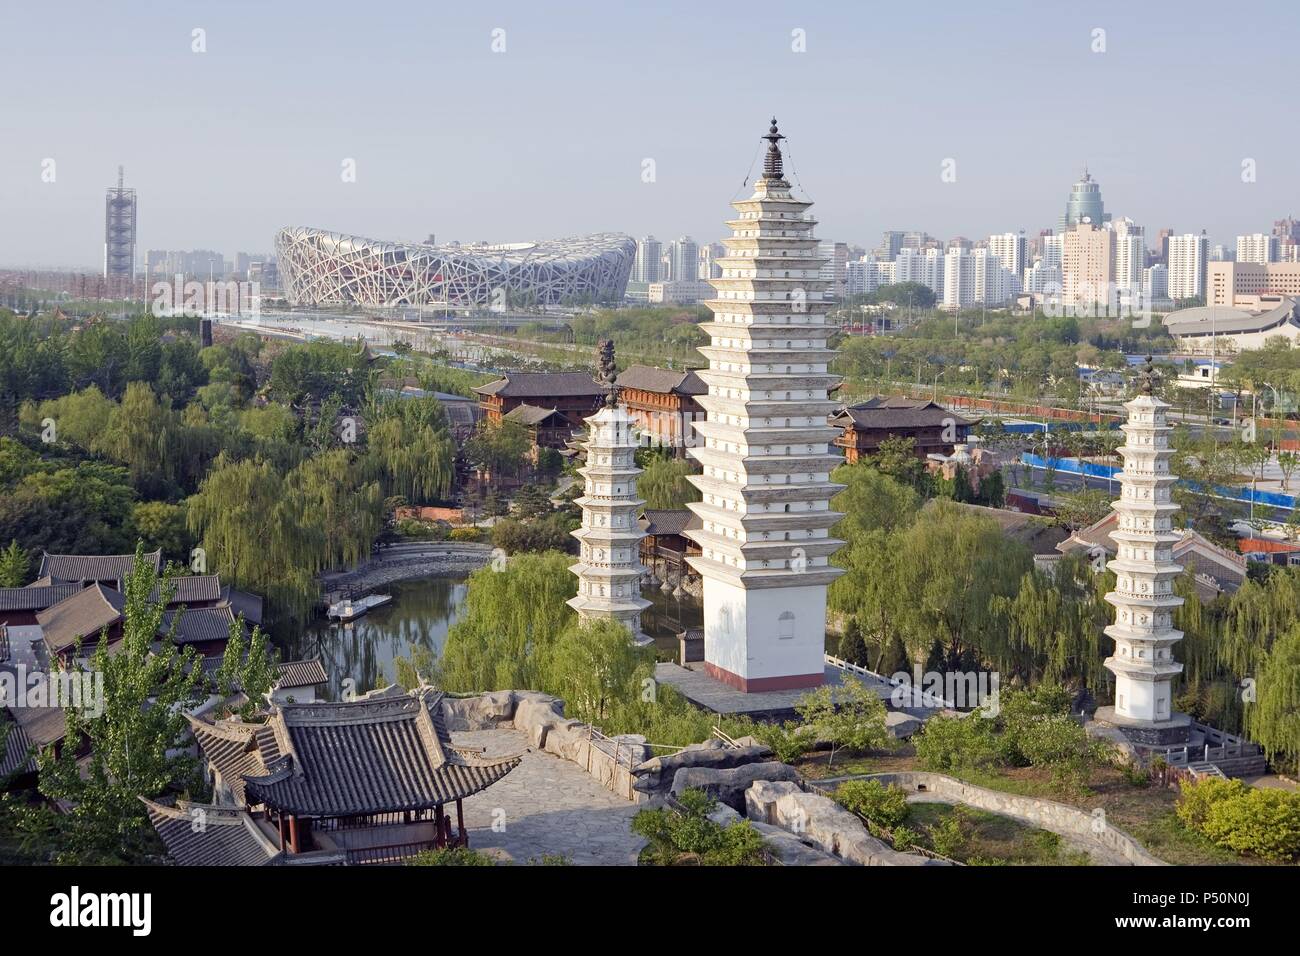 Hãy đến với Công viên Văn hóa Dân tộc Trung Quốc để khám phá những di sản văn hóa tuyệt đẹp của Trung Hoa! Với không gian rộng lớn, đầy đủ các kiến trúc đặc trưng của các dân tộc, bạn sẽ được trải nghiệm những điều thú vị và mới mẻ mà không một nơi nào khác có thể sánh được.